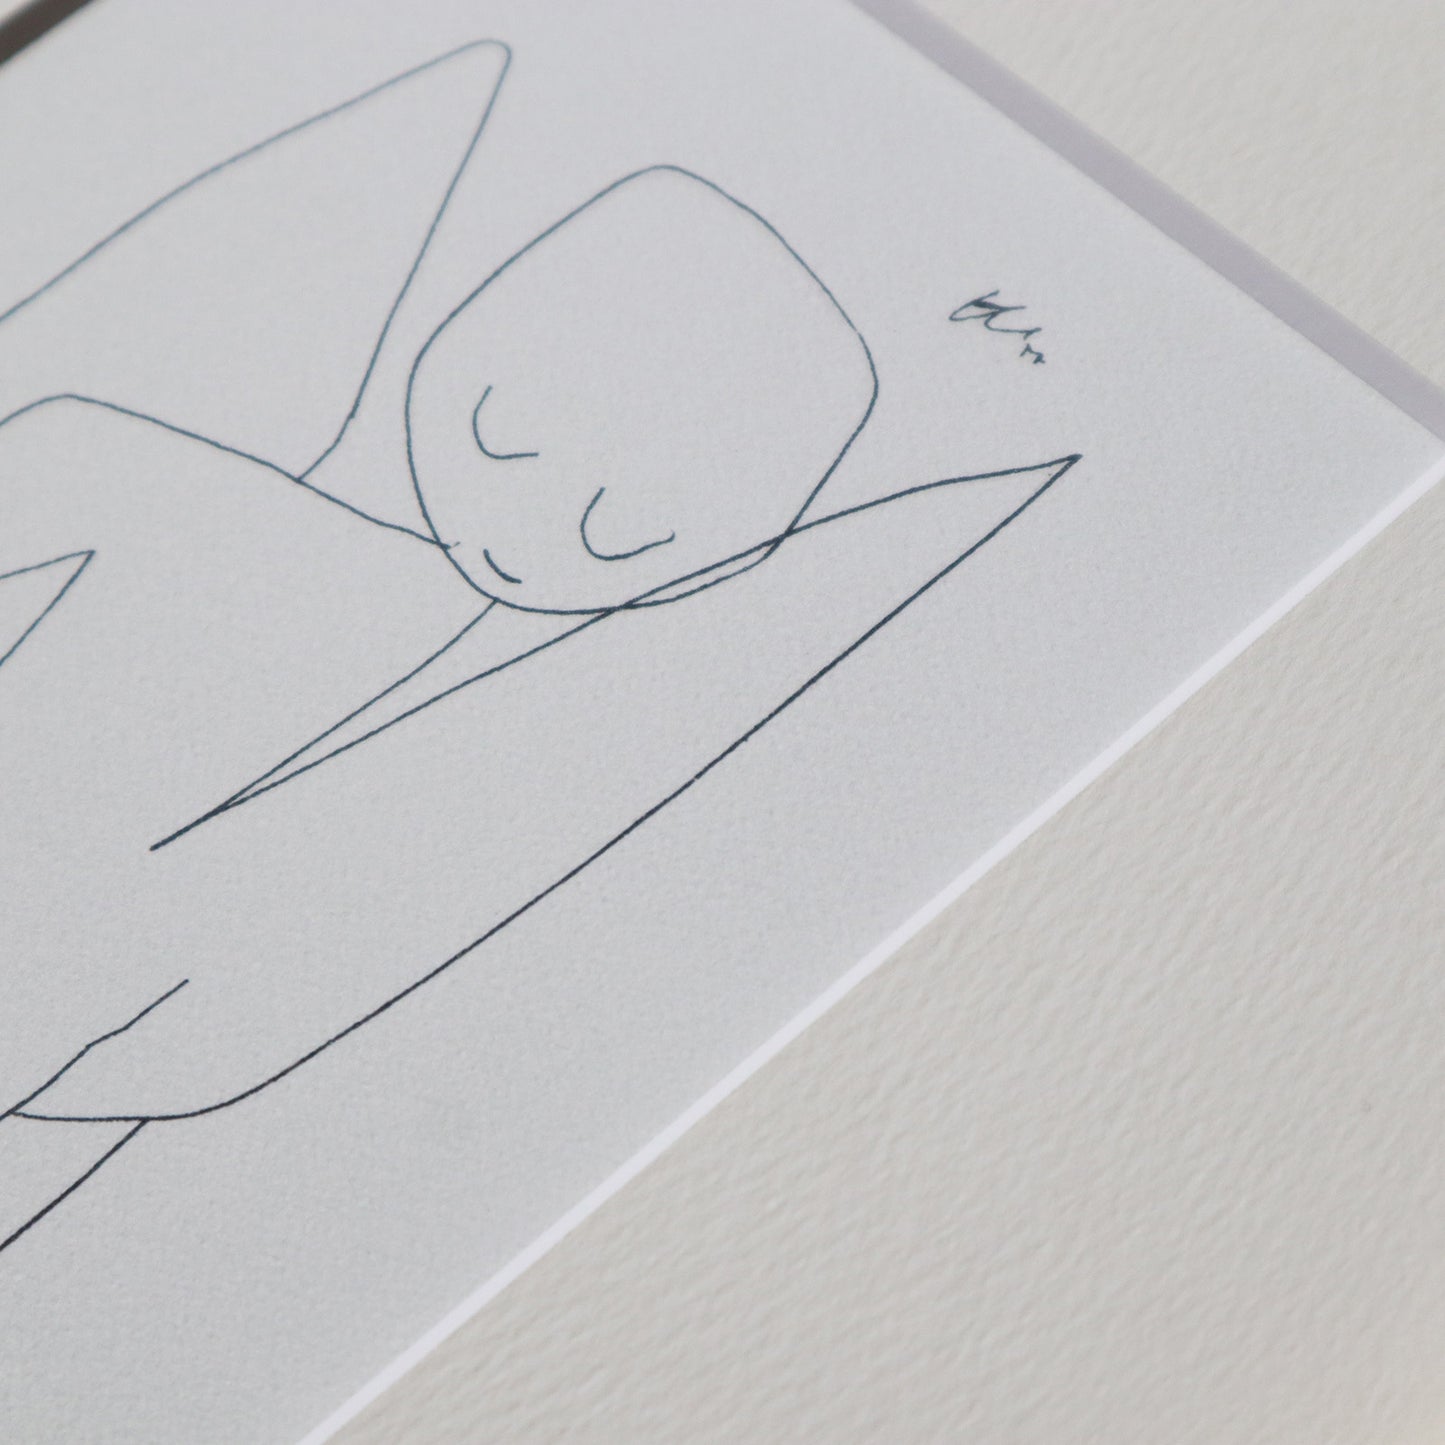 パウル・クレー「忘れっぽい天使」アートポスター（フレーム付き） / Paul Klee “Vergesslicher Engel” Art Frame